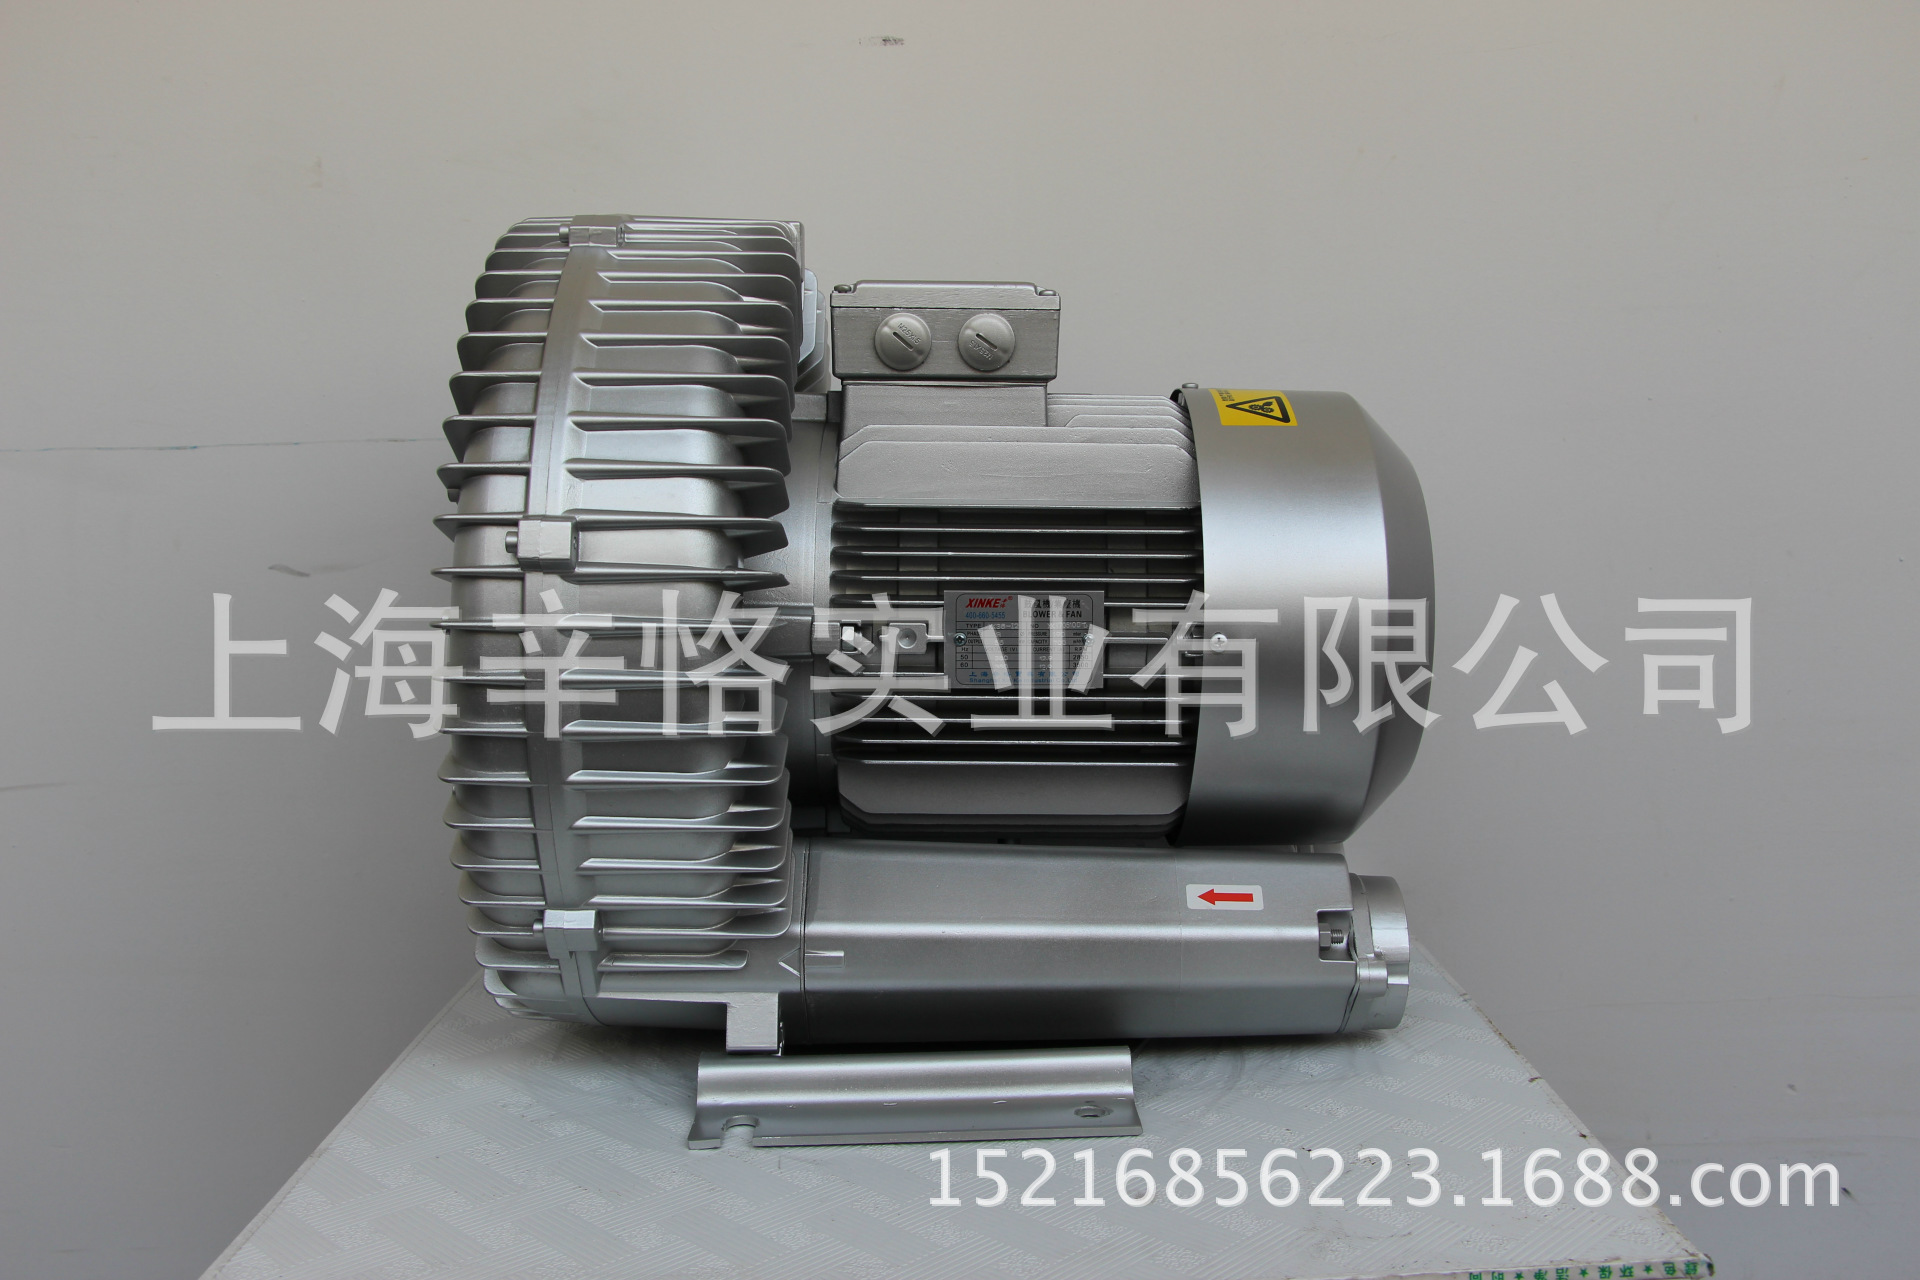 XK38-I2 5.5KW高压风机 漩涡气泵 环形鼓风机 旋涡鼓风机 漩涡鼓风机